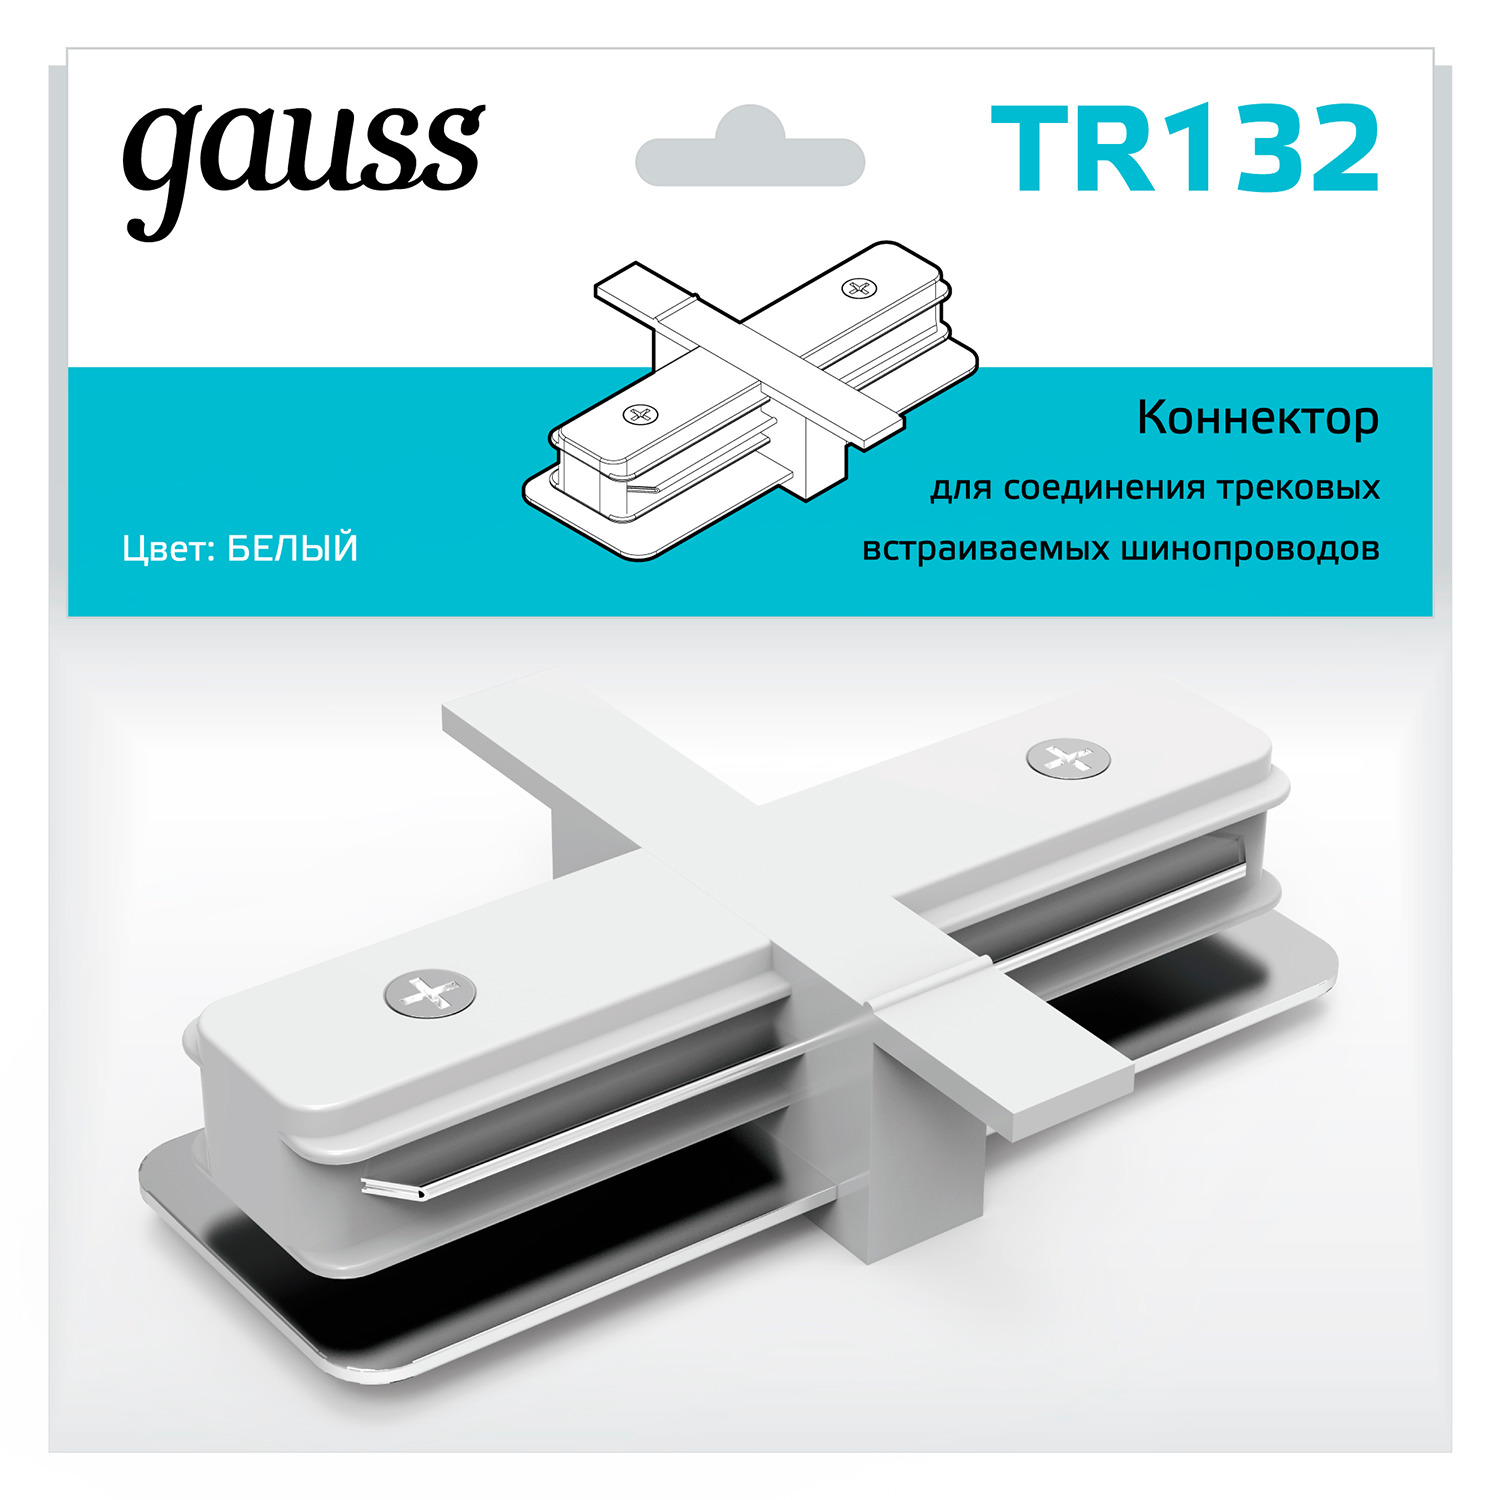 Коннектор Gauss для встраиваемых трековых шинопроводов прямой (I) белый коннектор gauss для трековых шинопроводов t